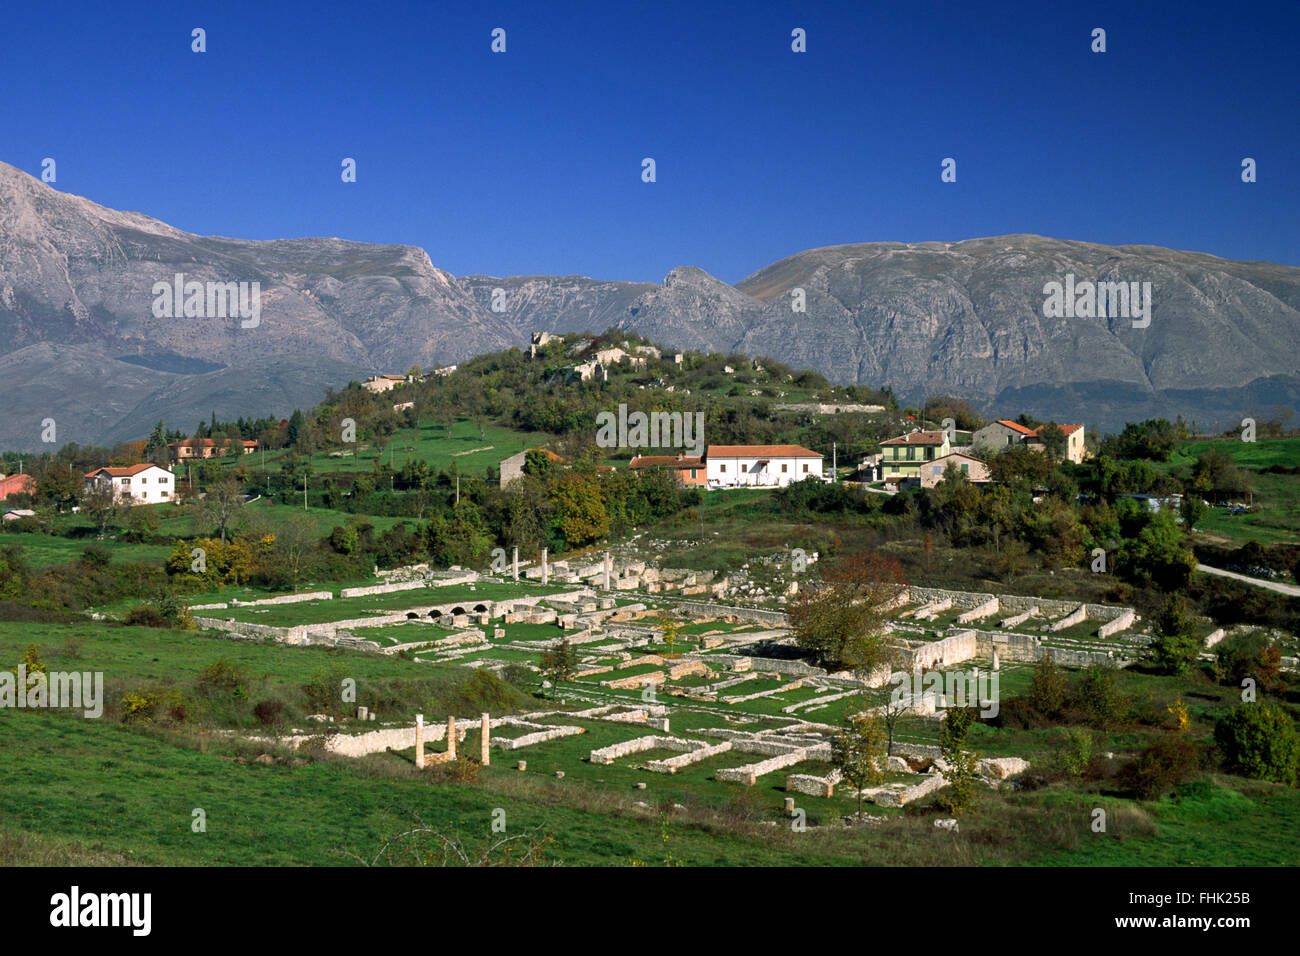 Italia, Abruzzo, rovine romane di Alba Fucens e Parco regionale Sirente Velino Foto Stock